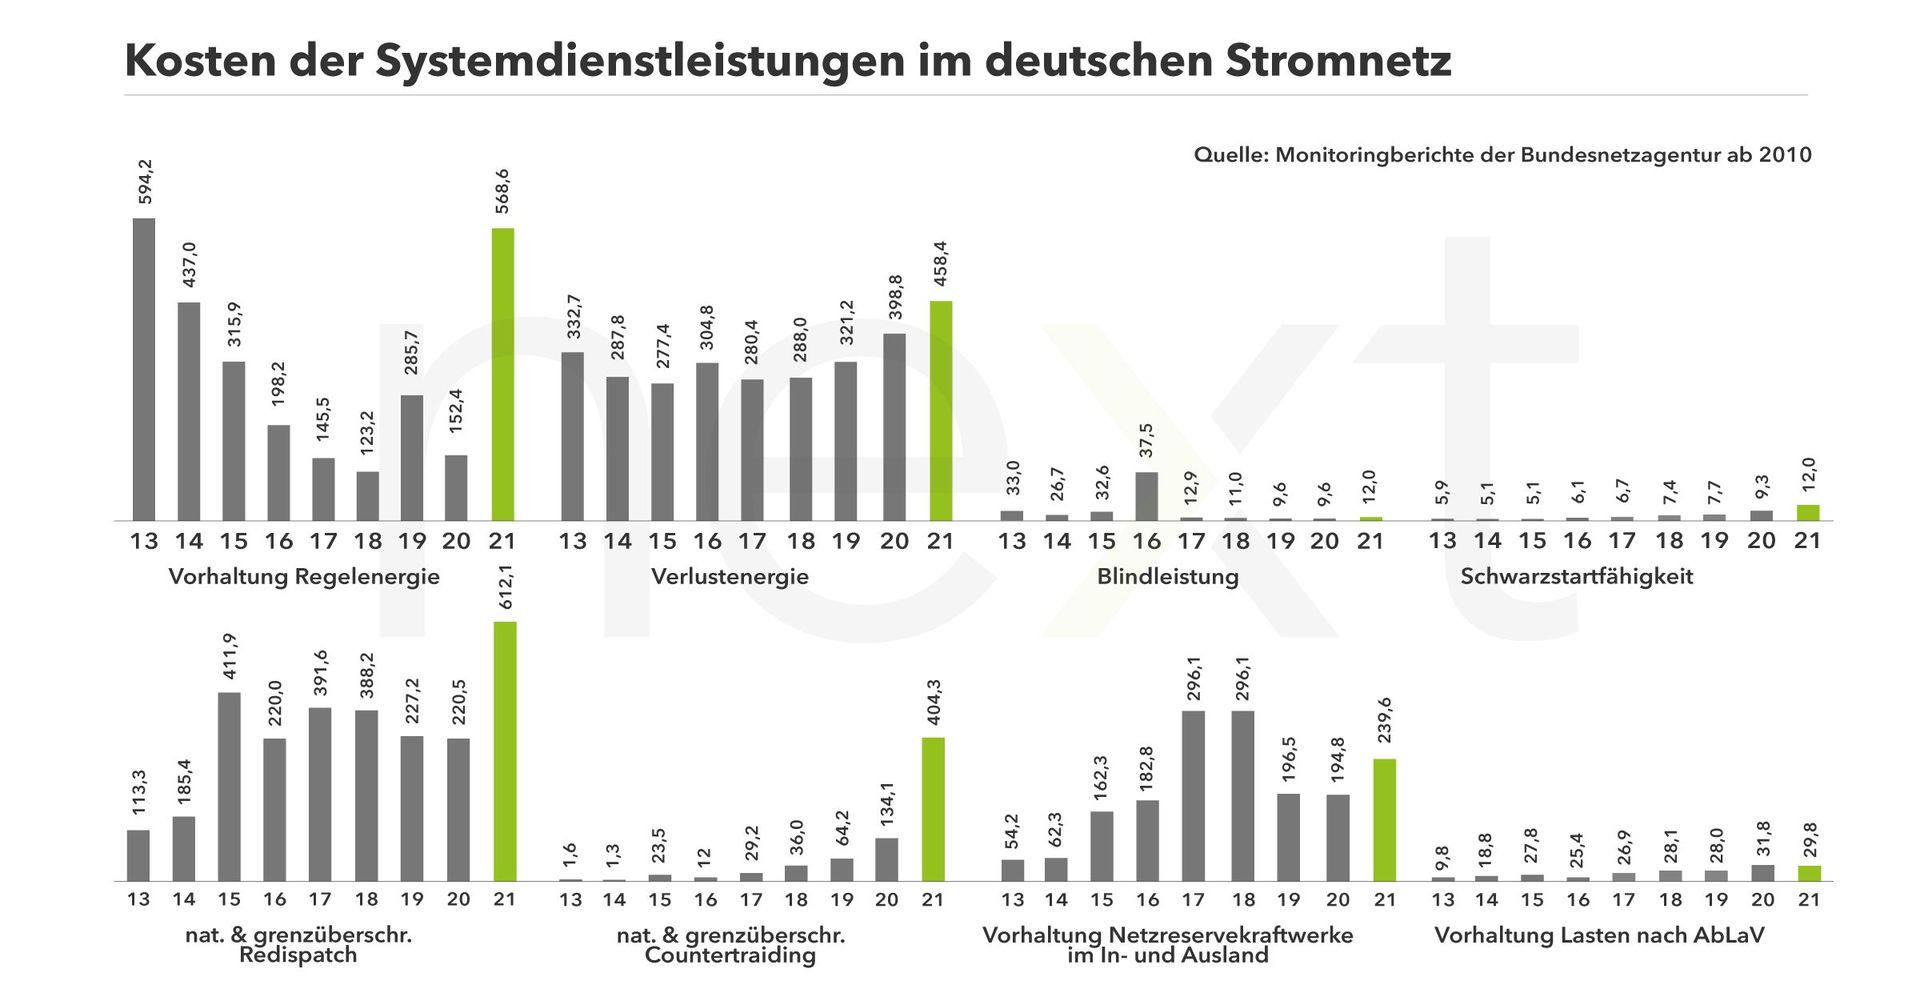 Balkendiagrammen zu verschiedenen Kostenpunkten der Systemdienstleistungen der deutschen Übertragungsnetzbetreiber seit 2010.